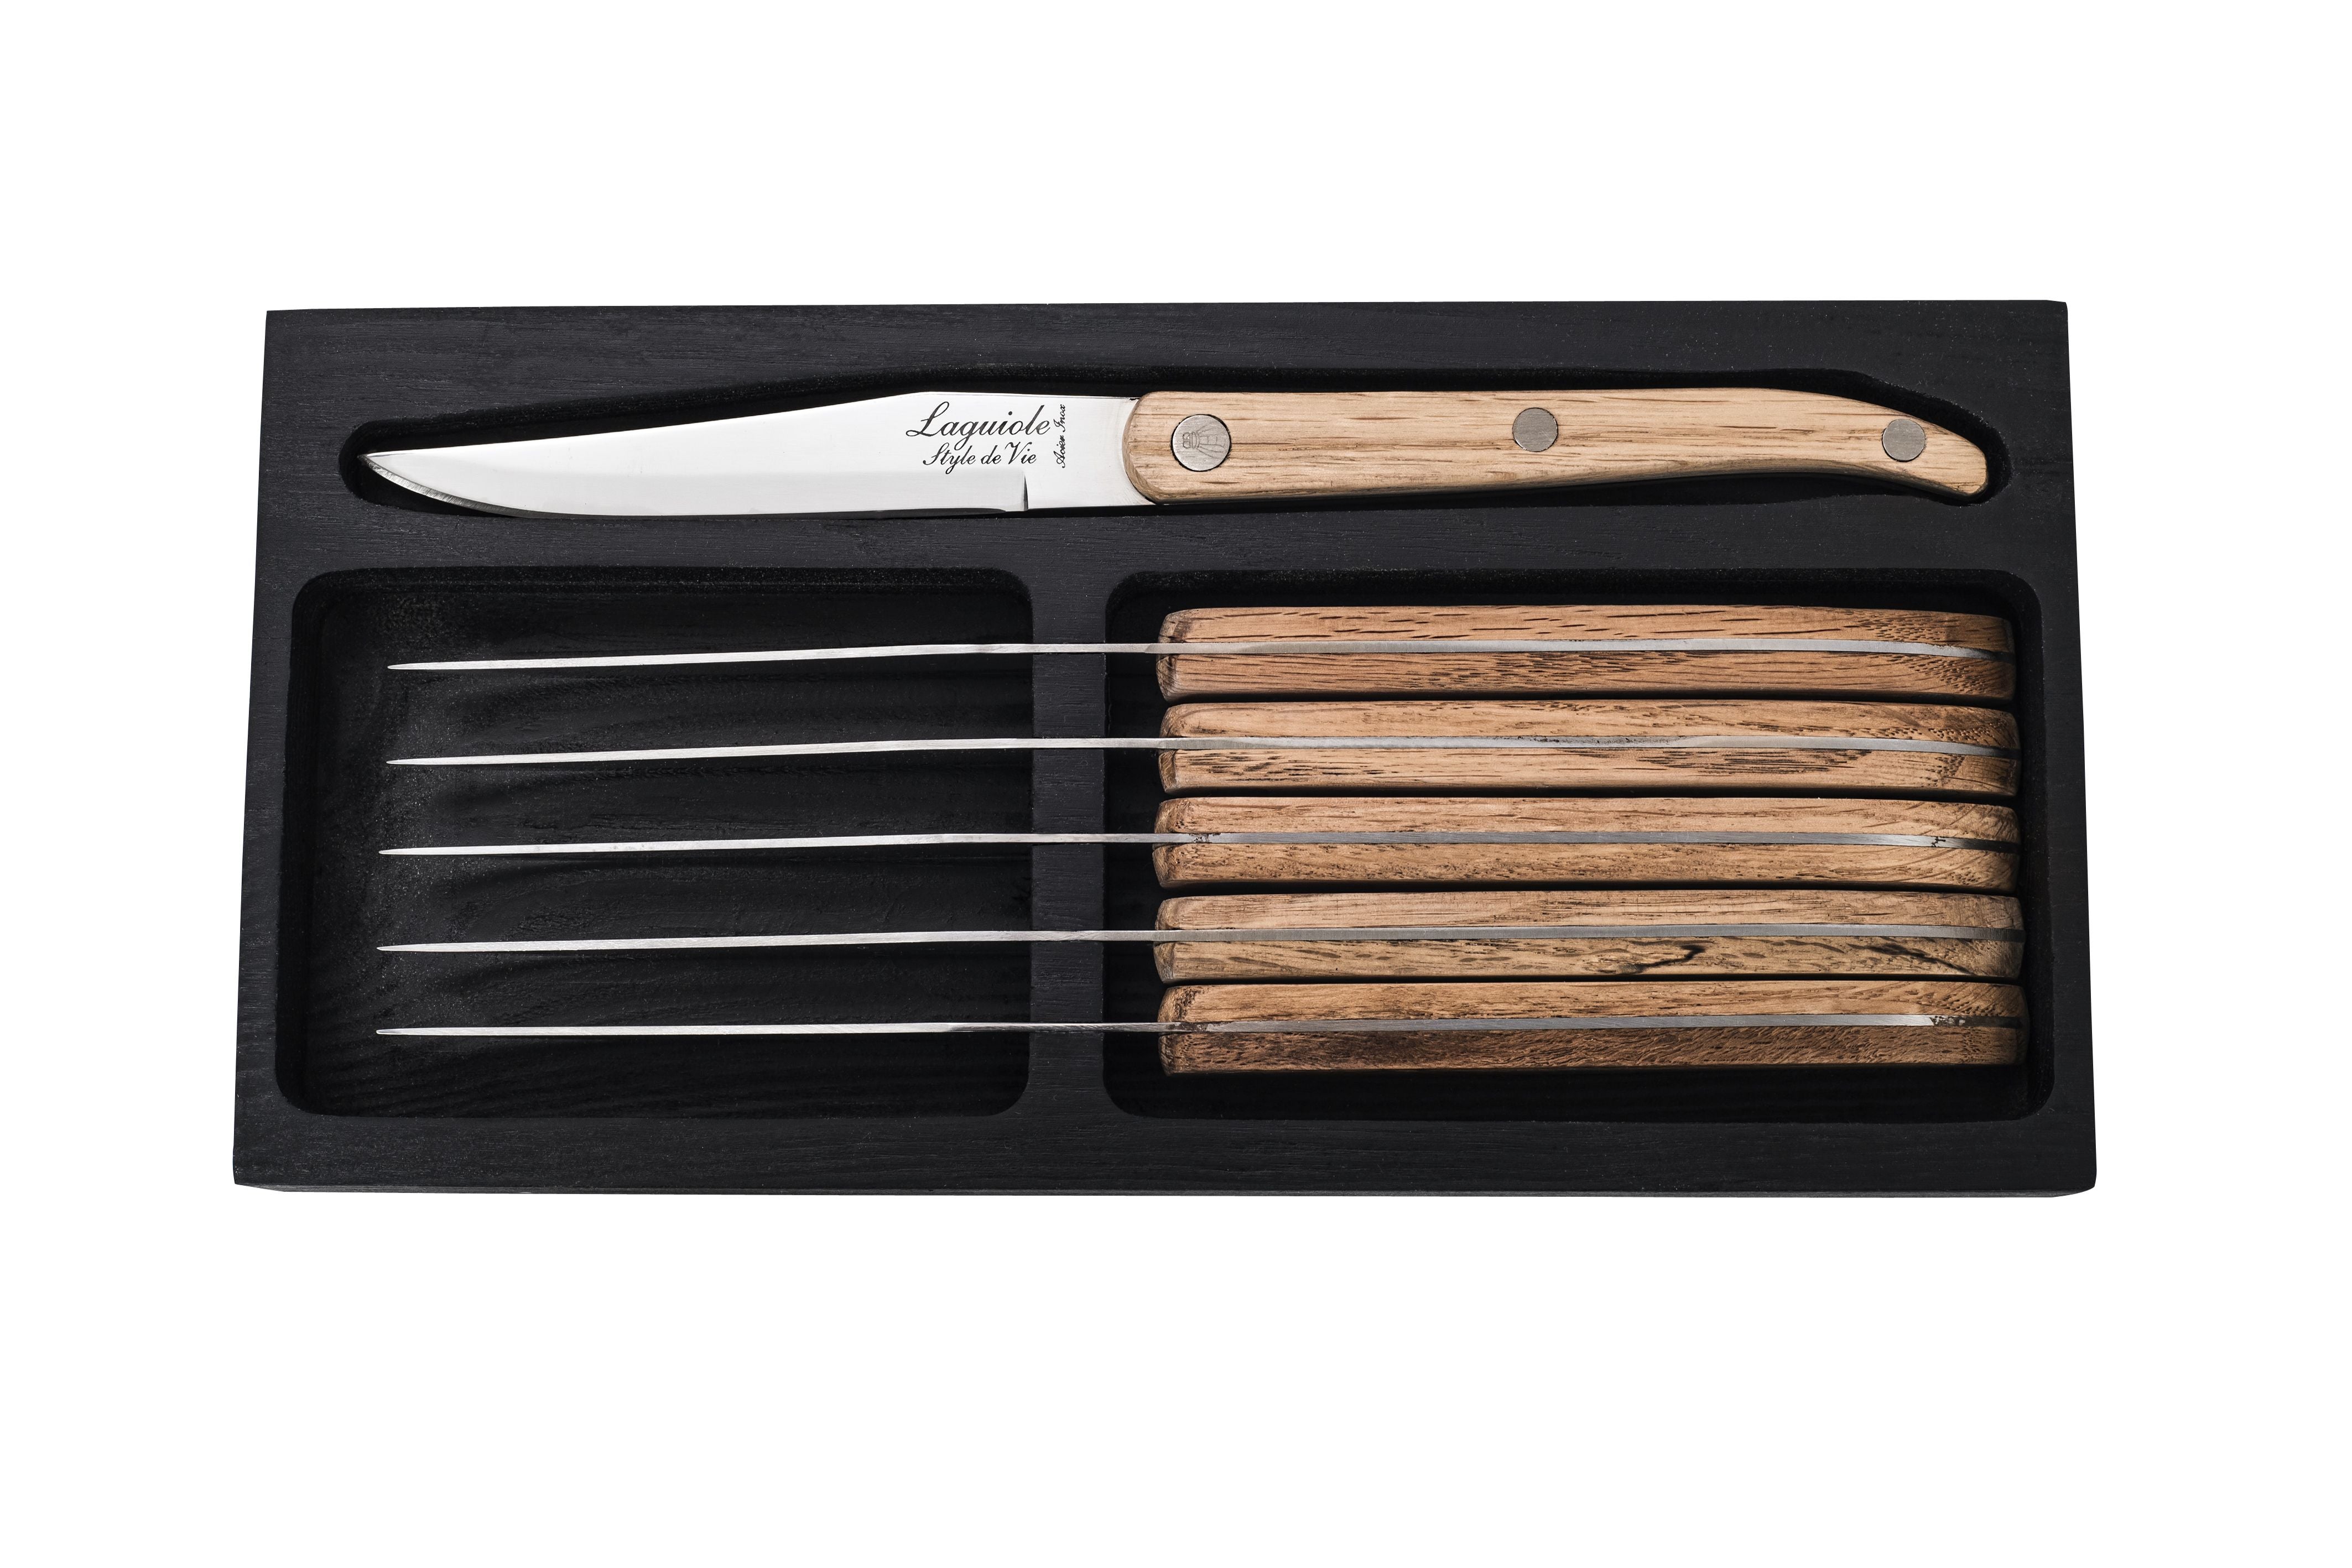 Estilo de Vie Authentique Laguiole Innovation Line Kneak Knives de 6 piezas de madera de roble, cuchilla suave